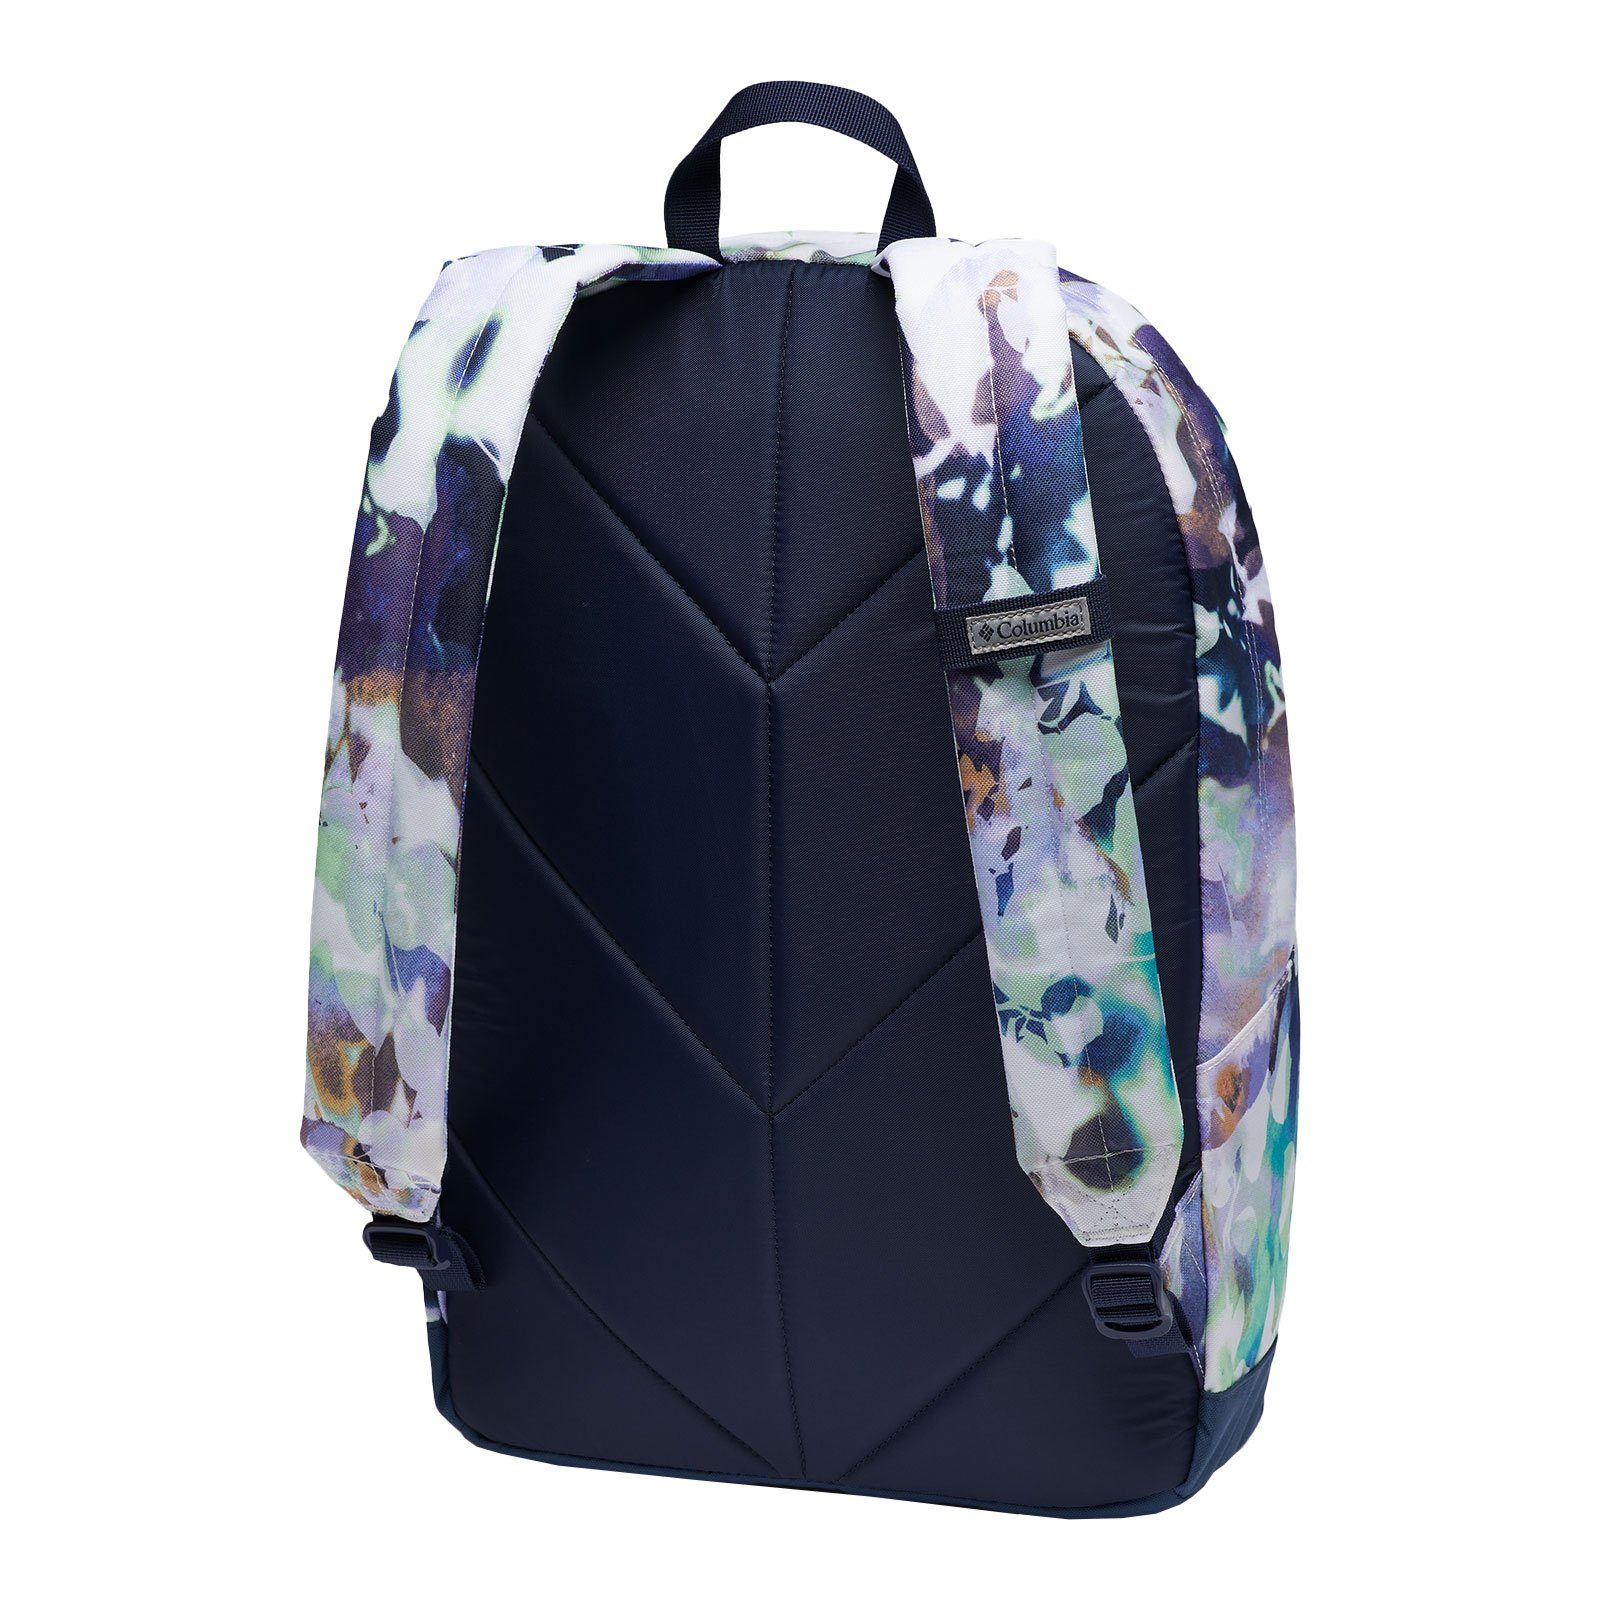 Columbia Freizeitrucksack Backpack, white Zigzag™ mit 22L / nocturnal 102 impressions Laptopfach